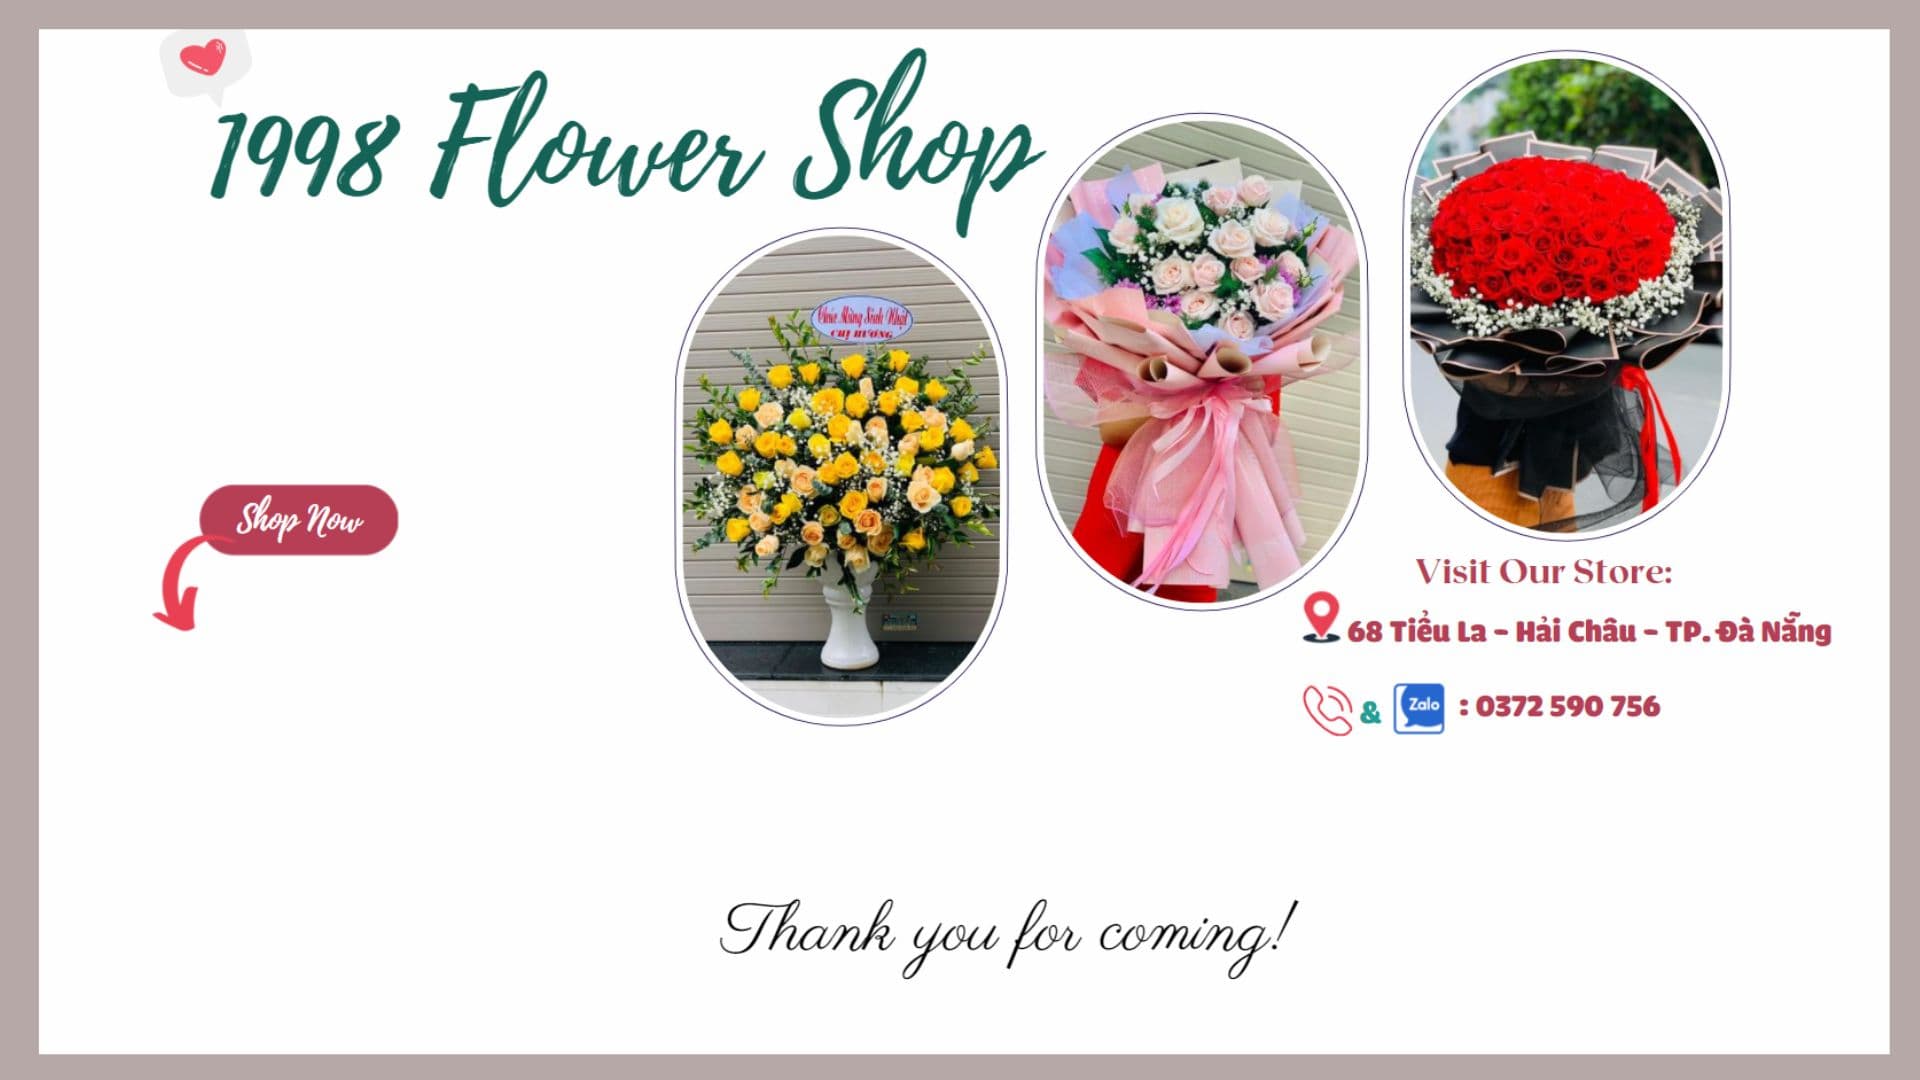 Tiệm Hoa Tươi 1998 – shop hoa tươi gần đây tại Đà Nẵng giá rẻ